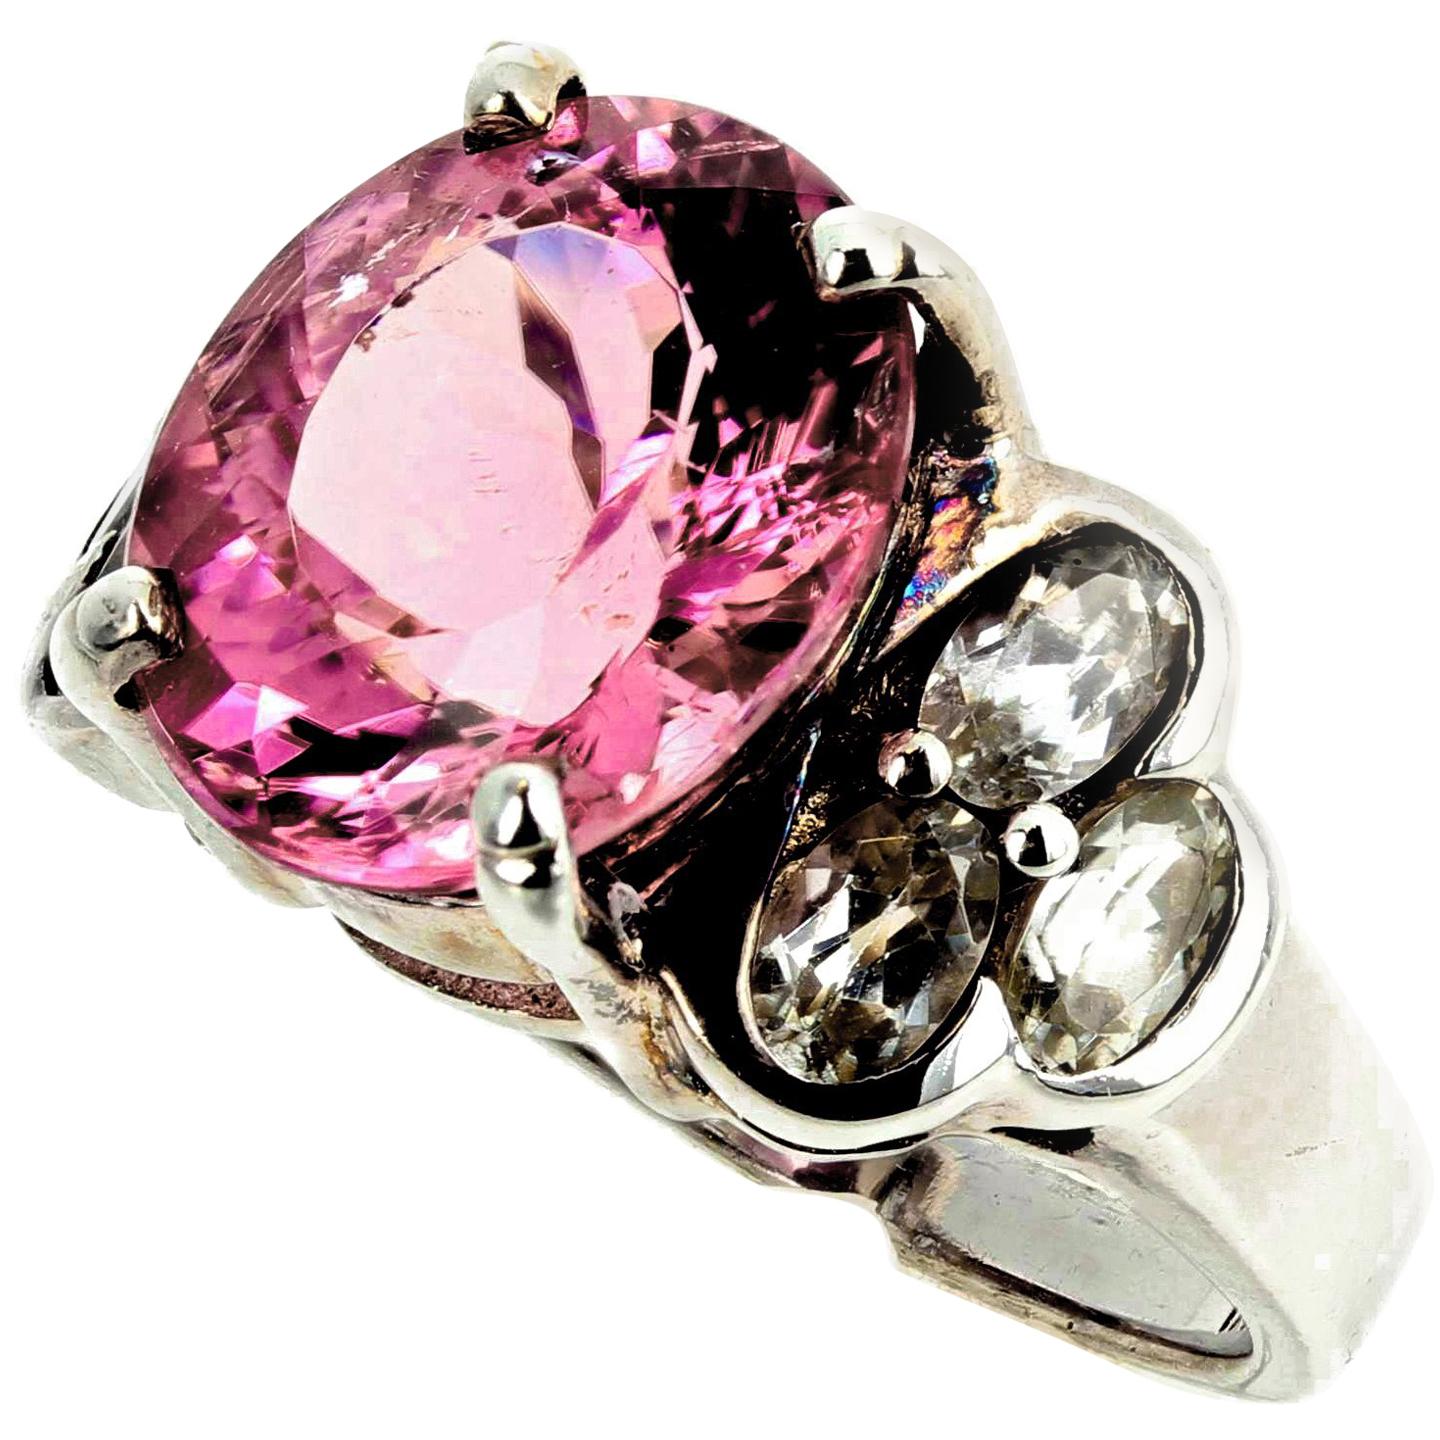 Schner 4 Karat funkelnder rosa Turmalin & Silberquarz Silber Ring von AJD